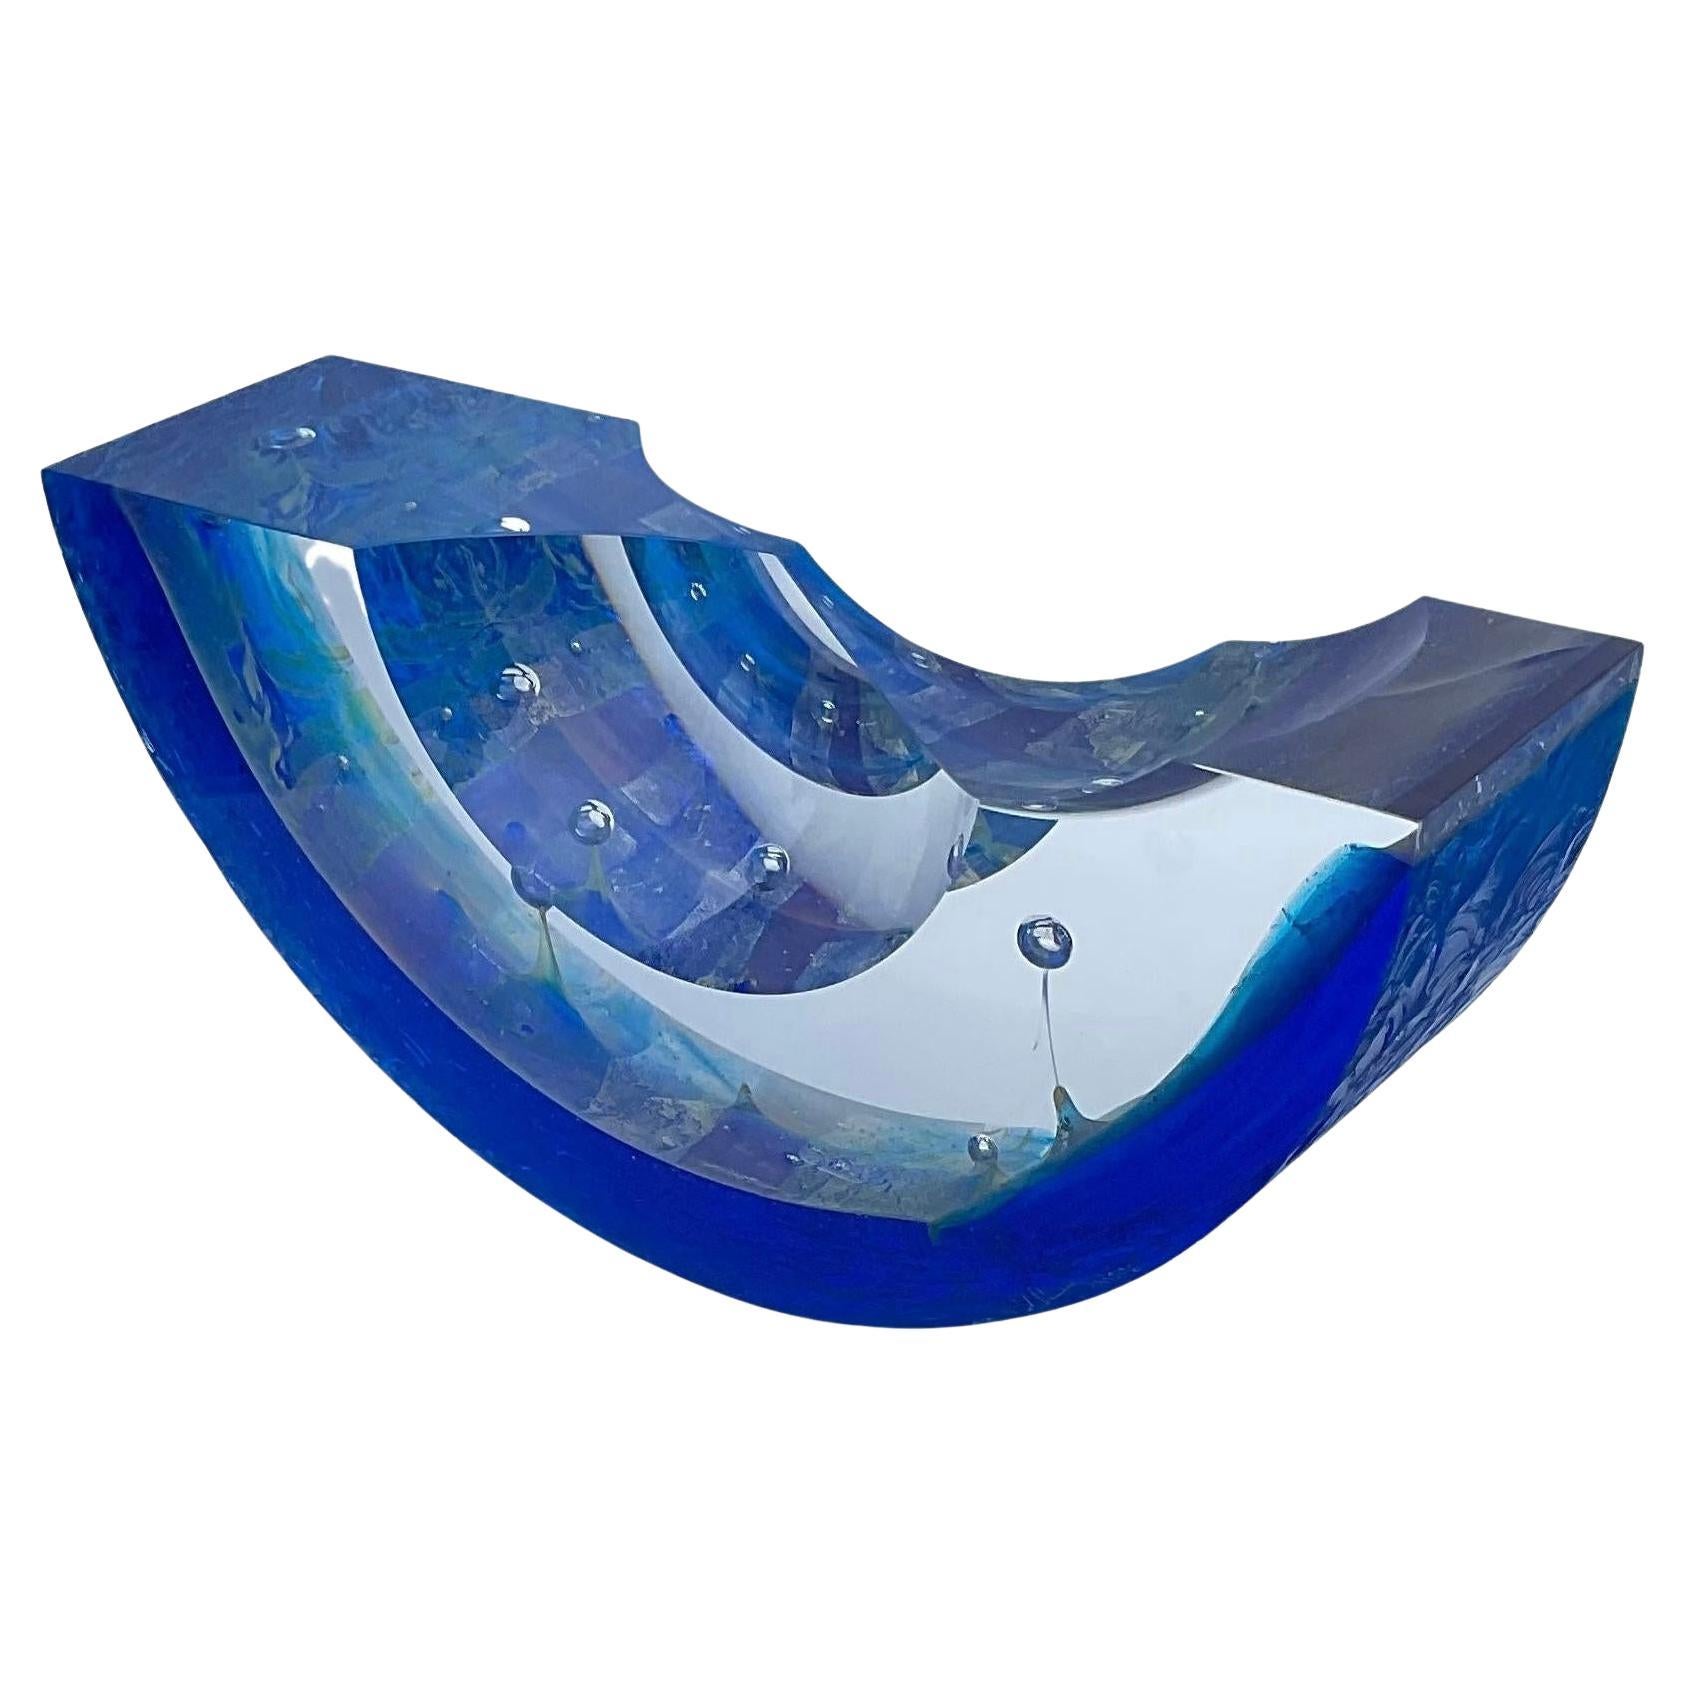 Steven Weinberg Studio Glass Abstract Regatta Boat Sculpture Artist Signed 